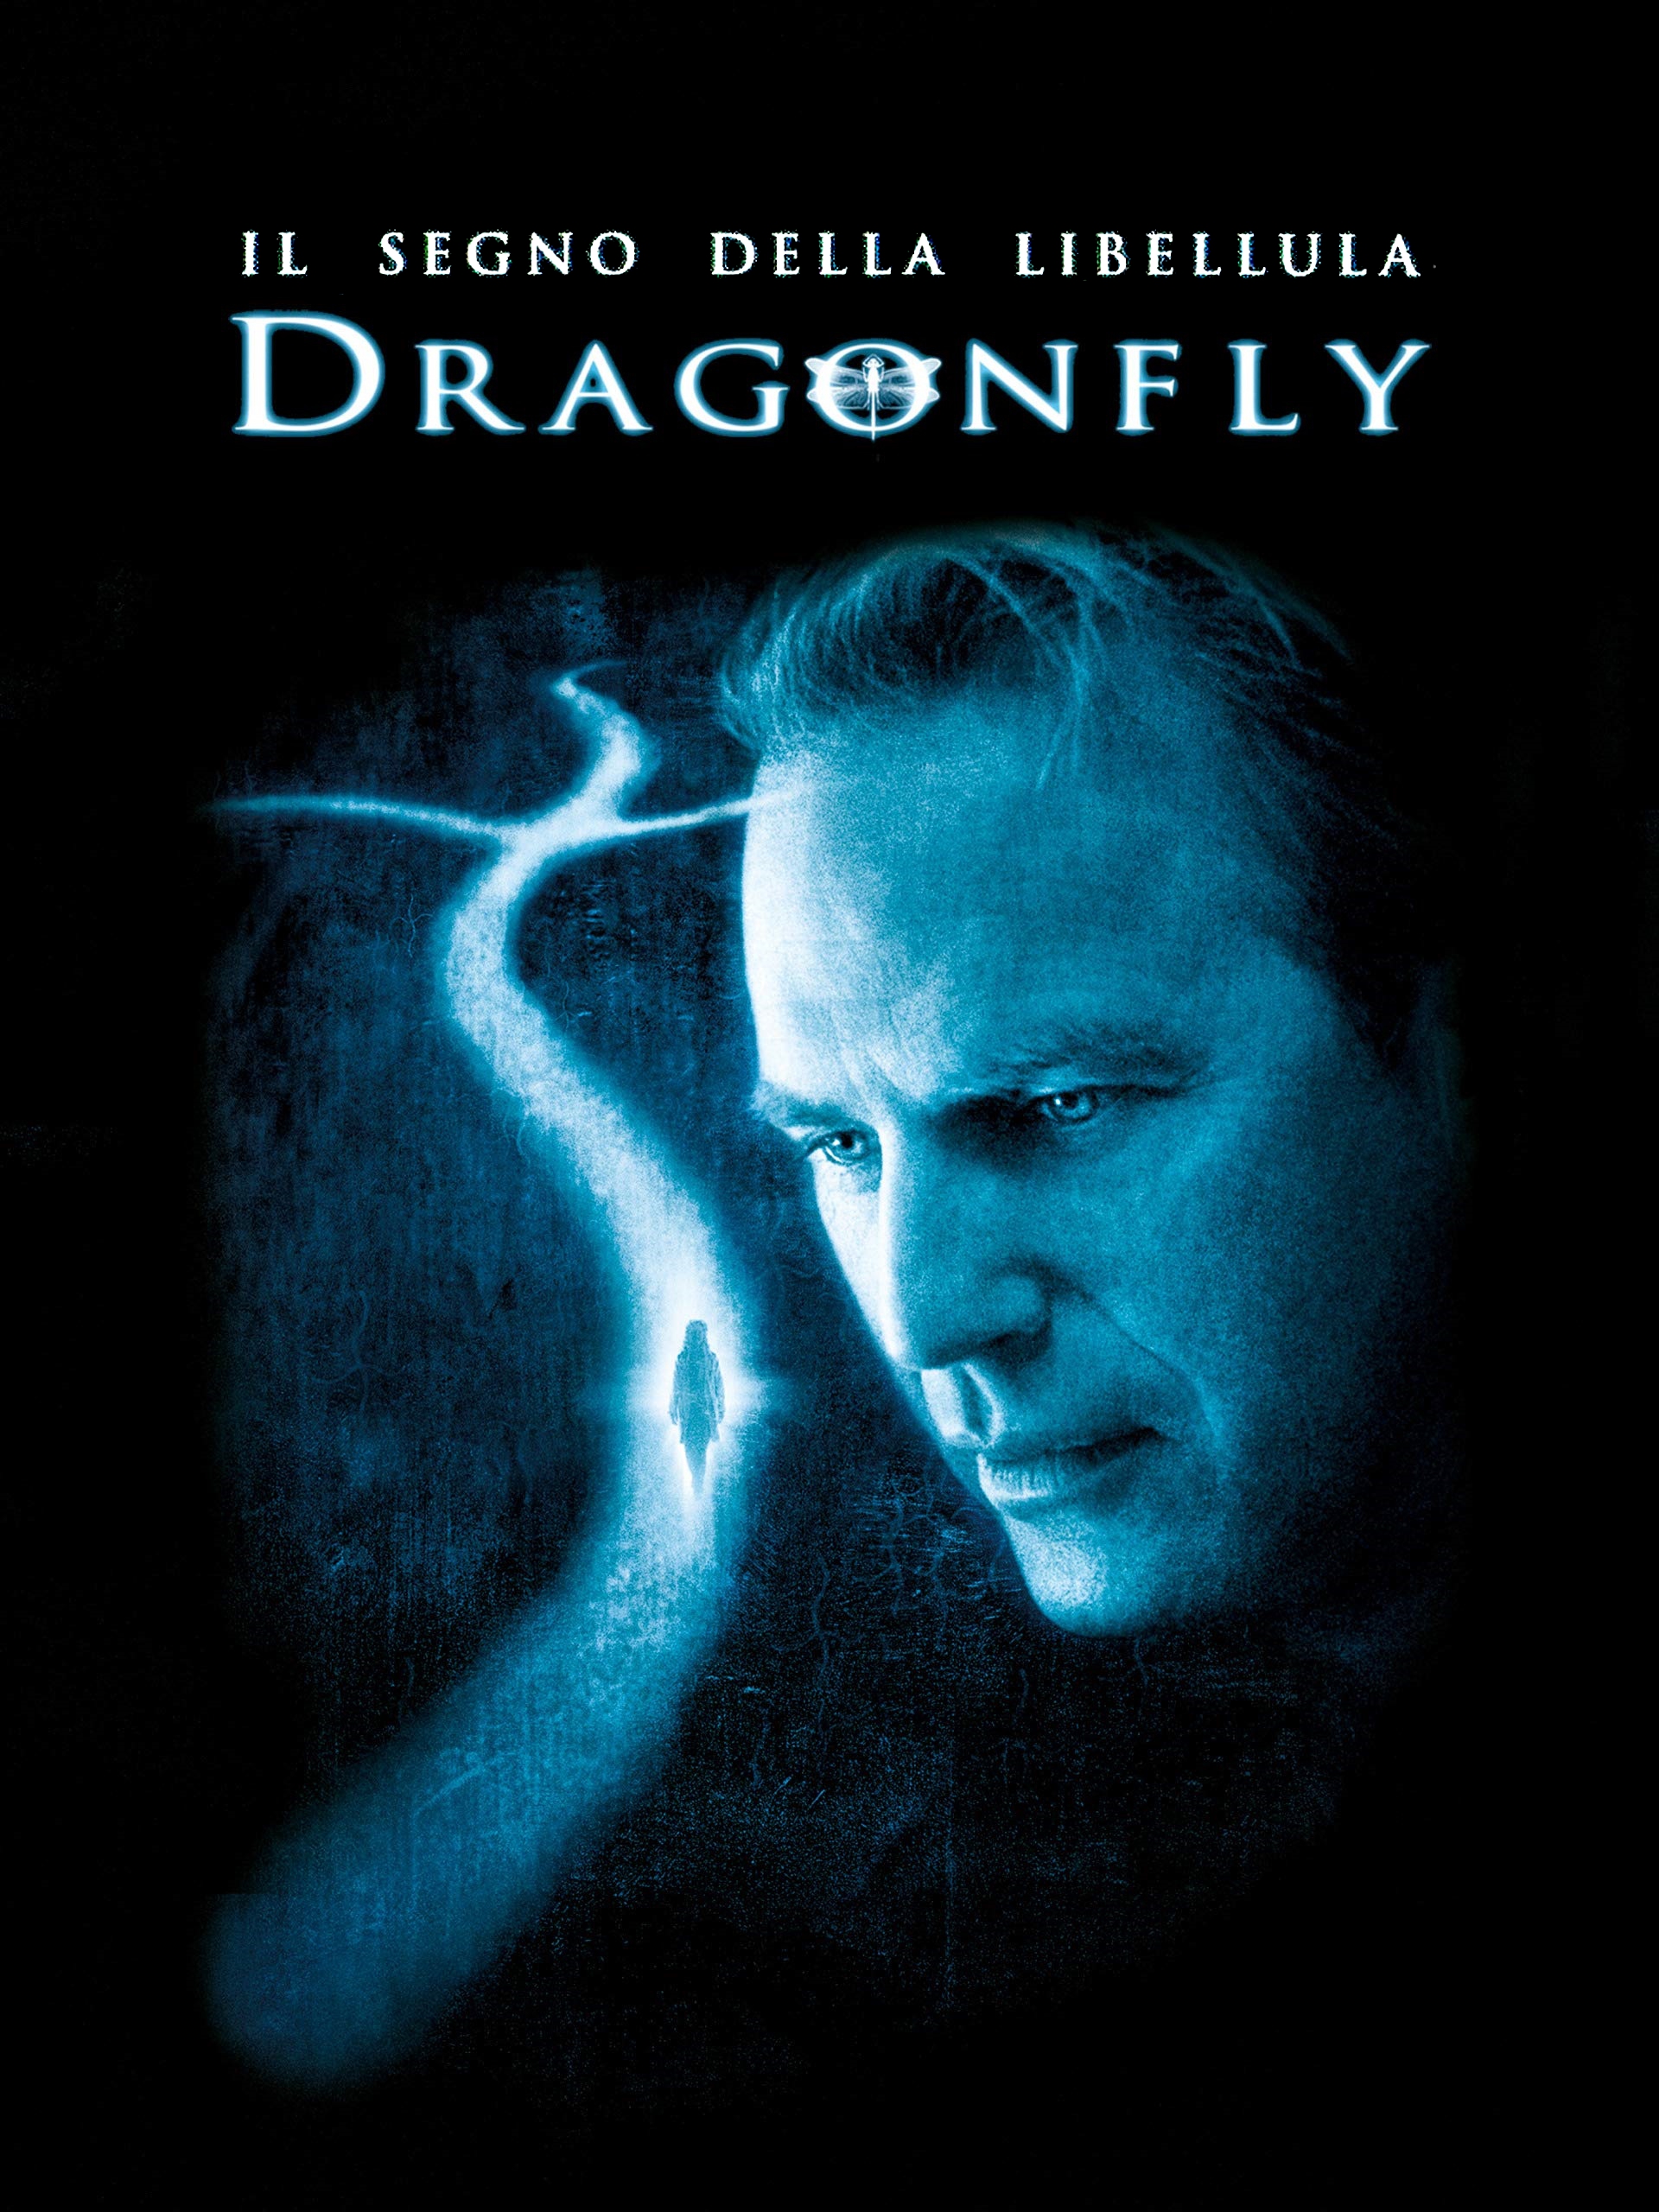 Il Segno Della Libellula – Dragonfly [HD] (2002)